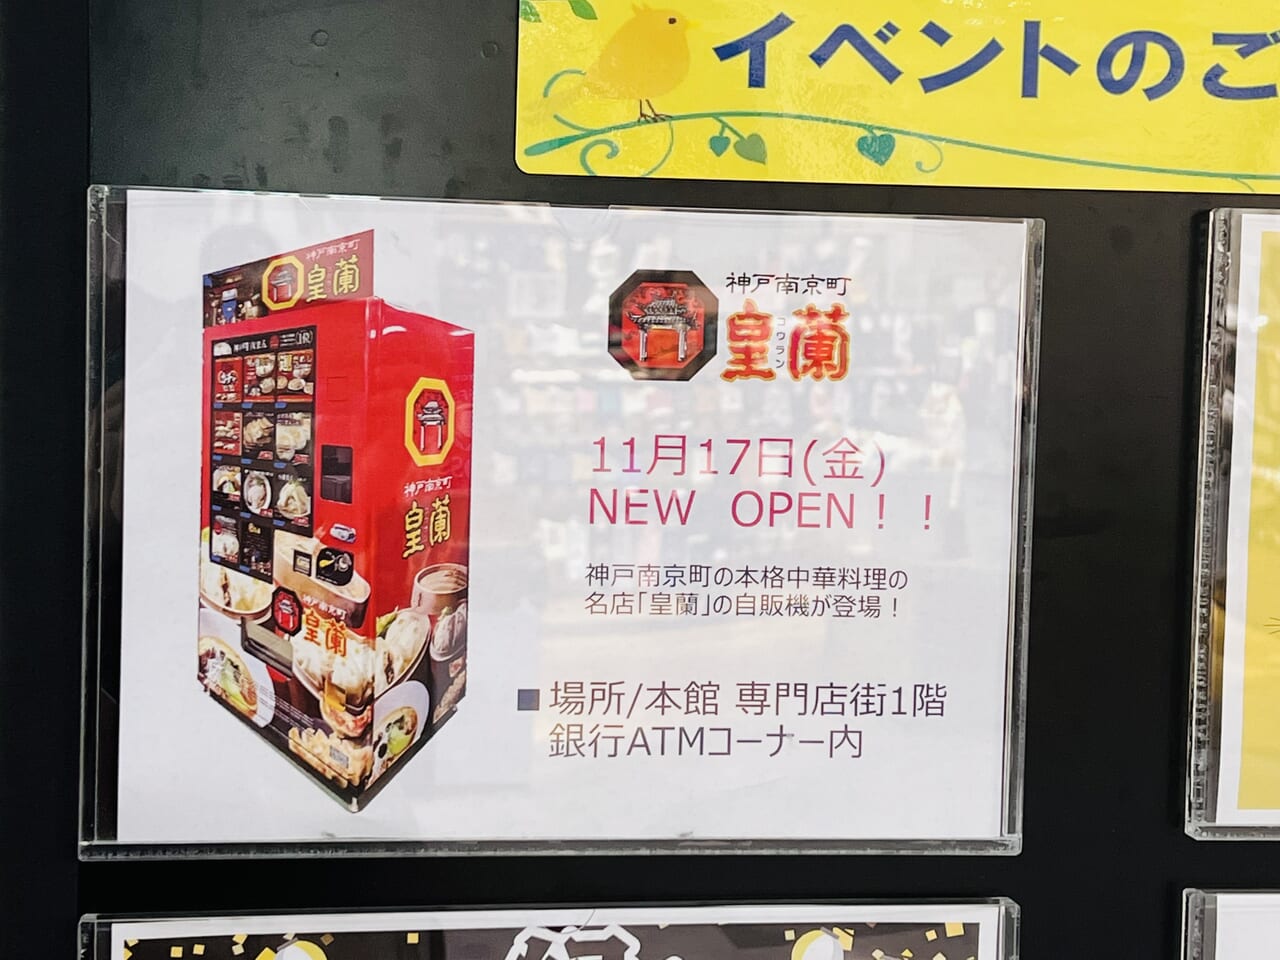 「イオンモール高知」のATMコーナーに設置された「神戸南京町 皇蘭」の自動販売機オープンのお知らせ